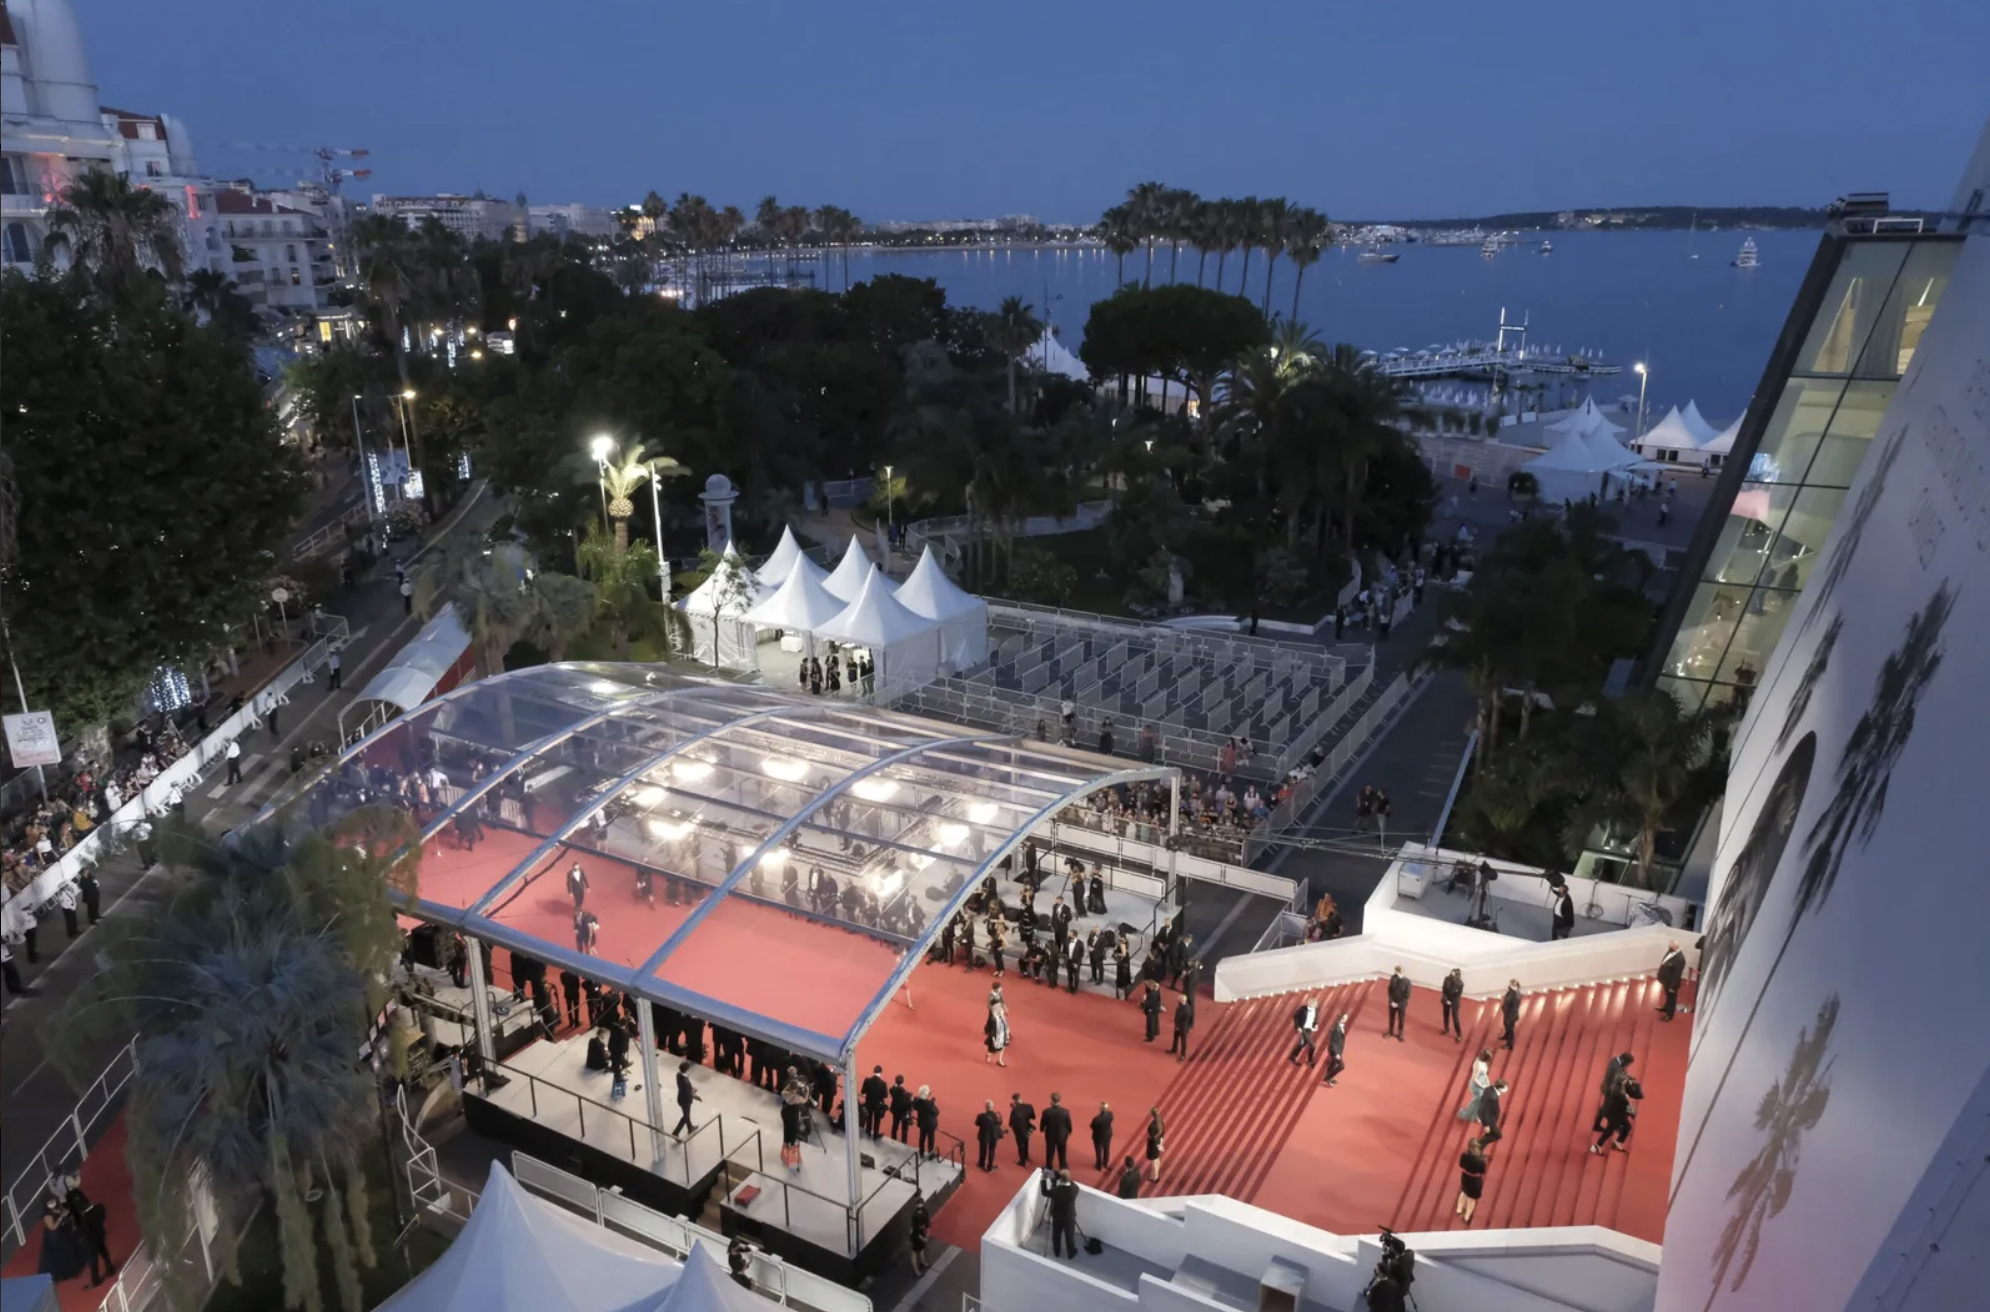 Festival de Cannes 2023